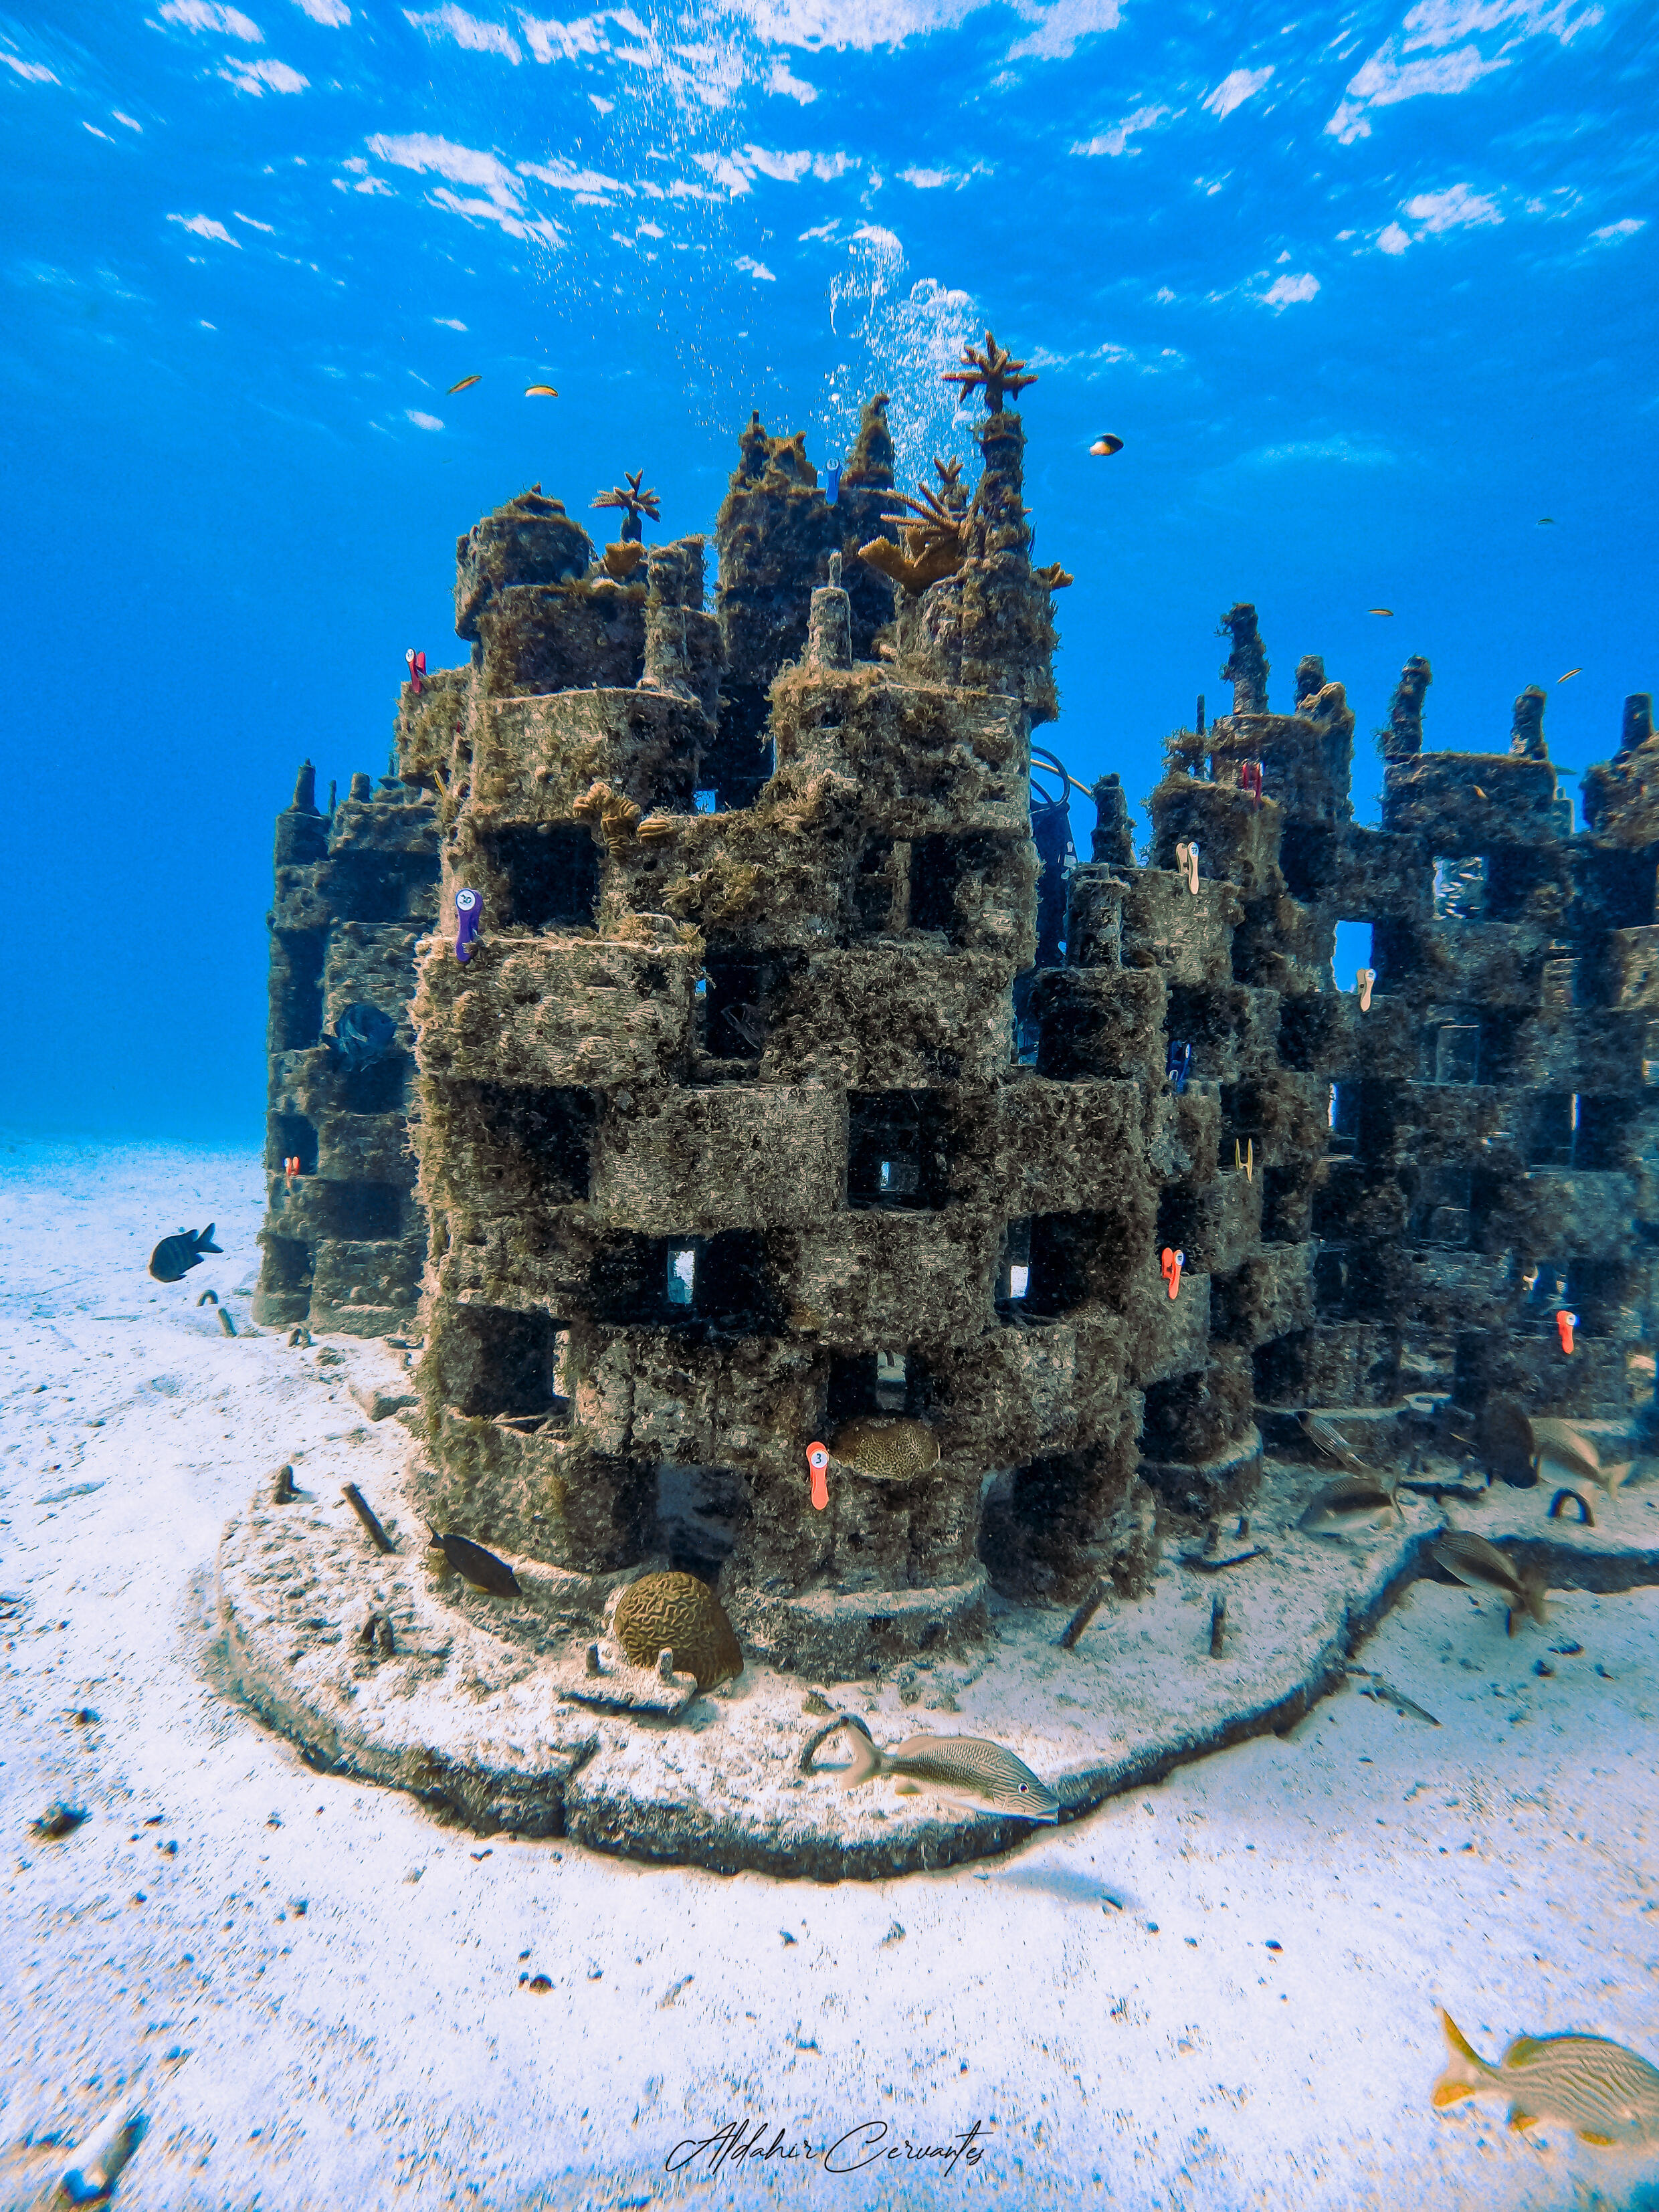 Der von Rrreefs entworfene Prototyp, hier nach seiner Installation im Oktober 2022 fotografiert, ist bereits von Korallen und Meereslebewesen bevölkert.